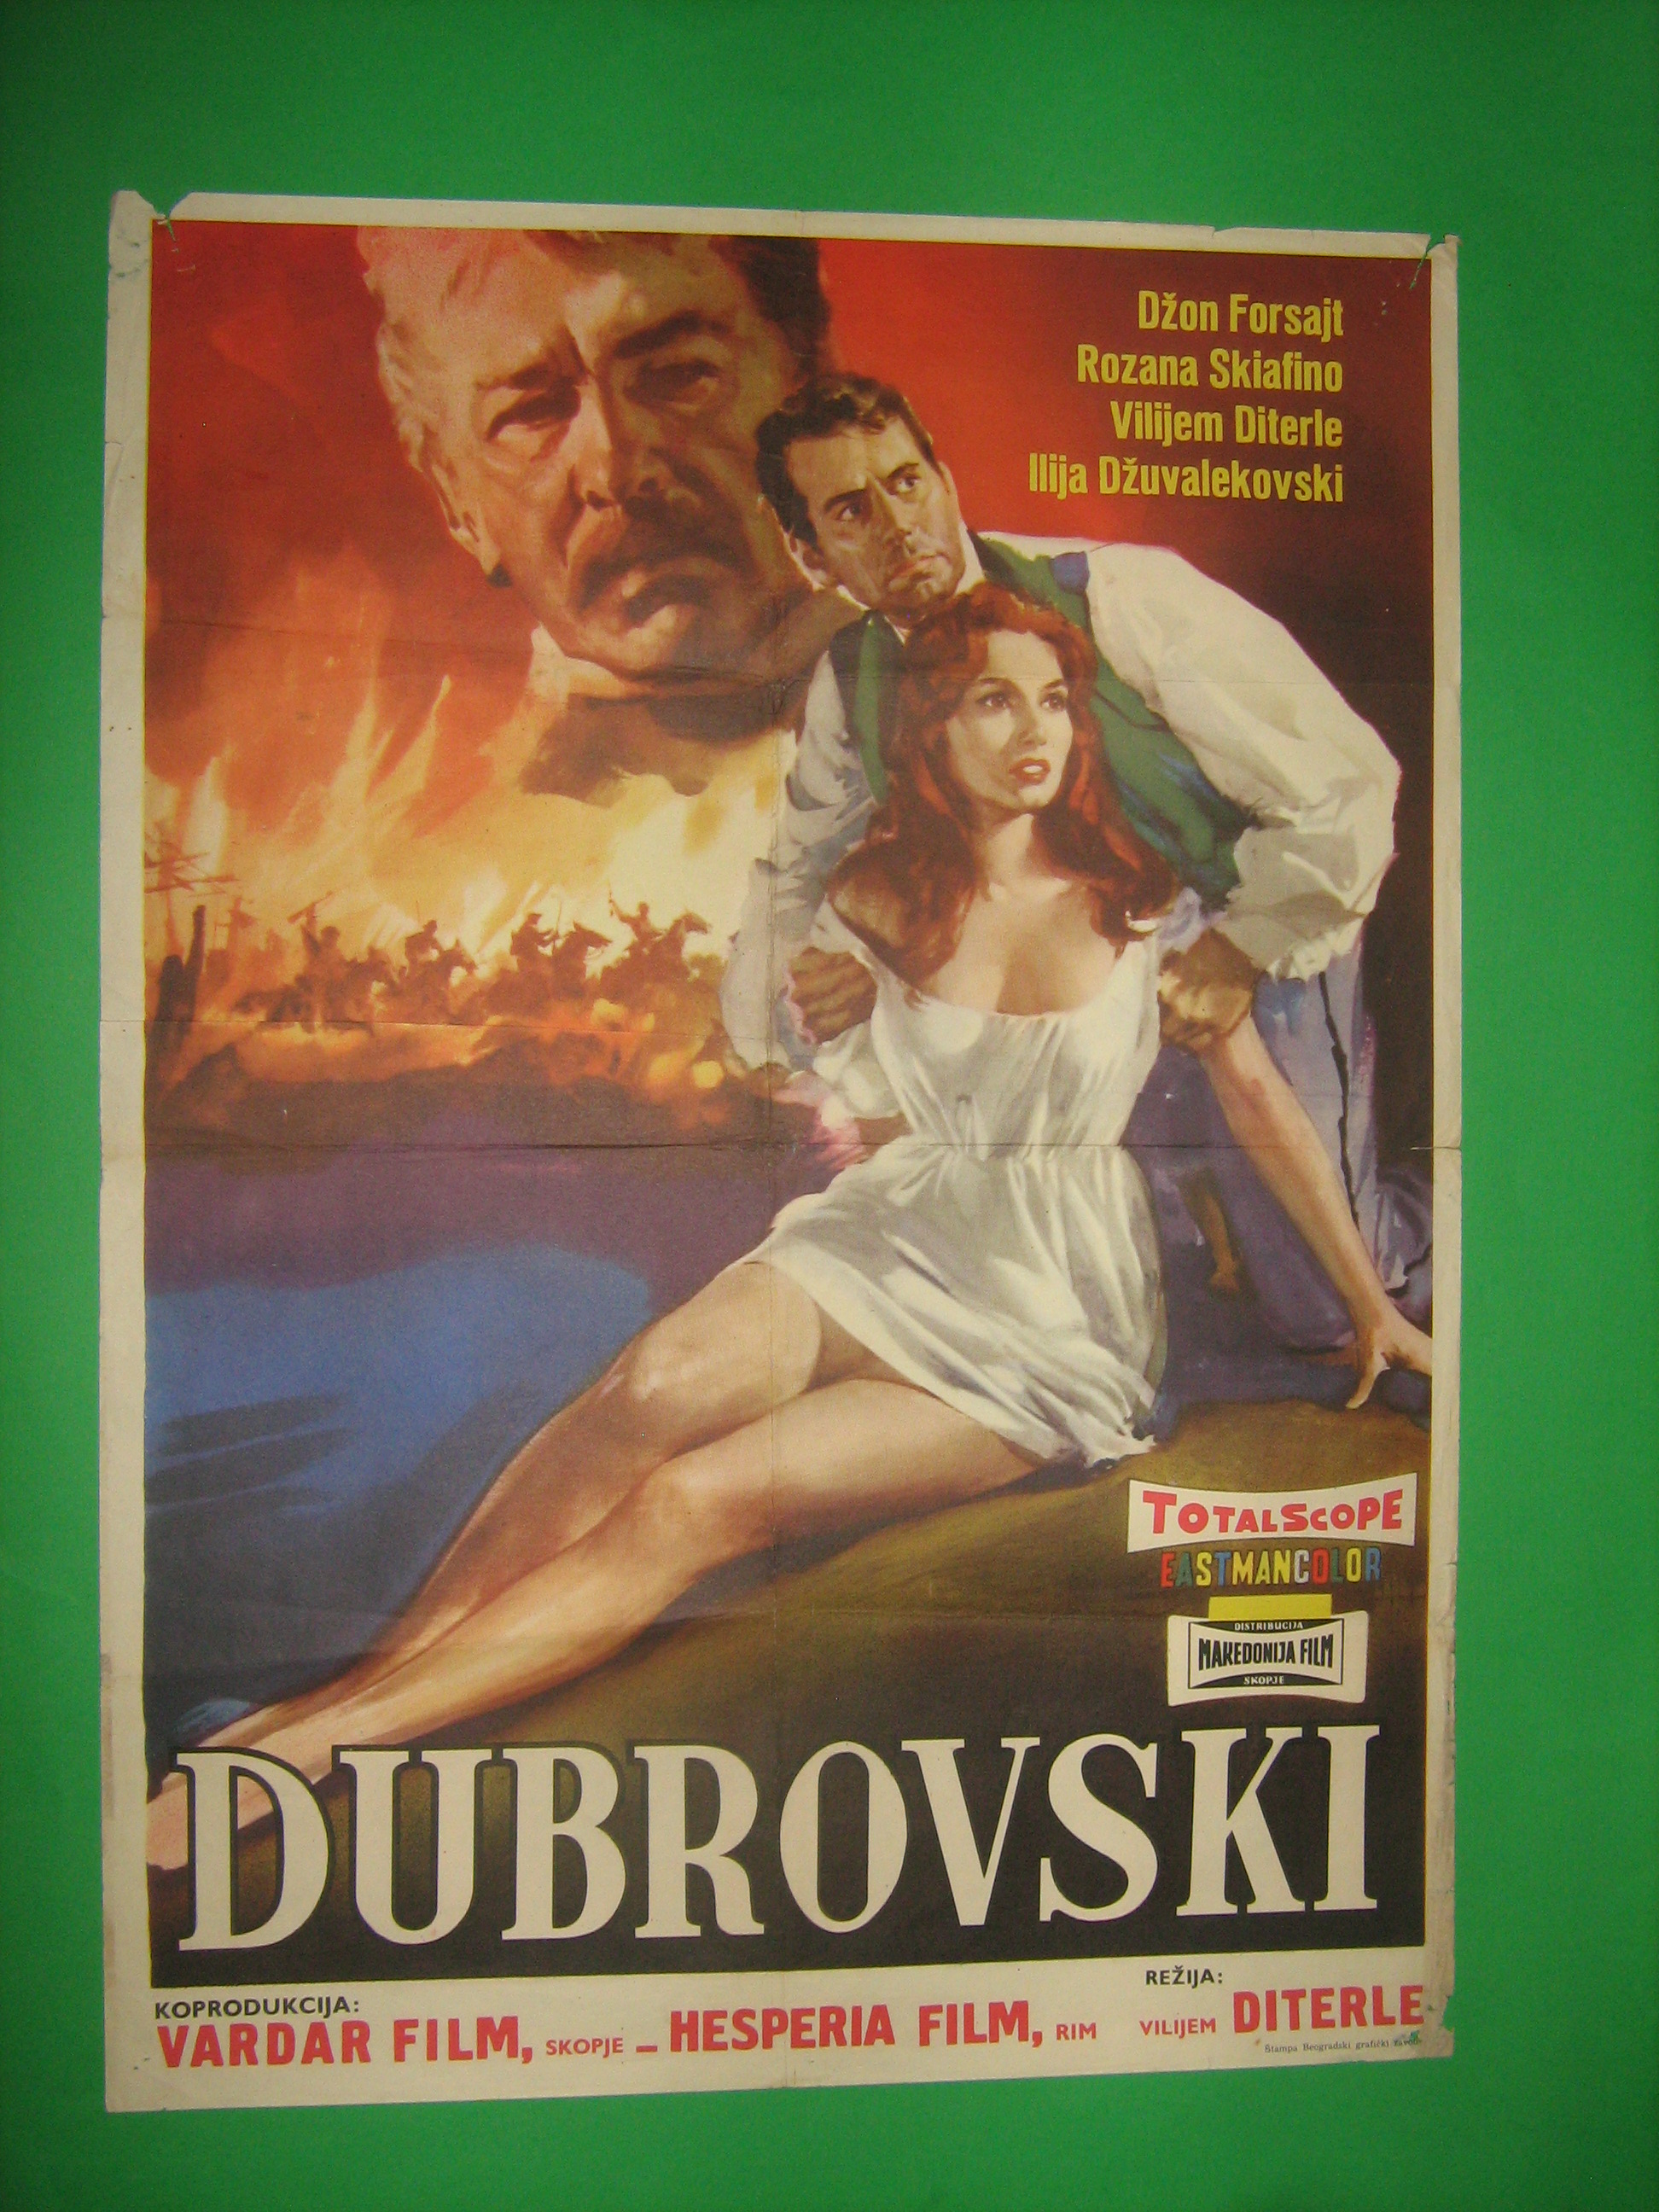 Dubrowsky (1959) Screenshot 3